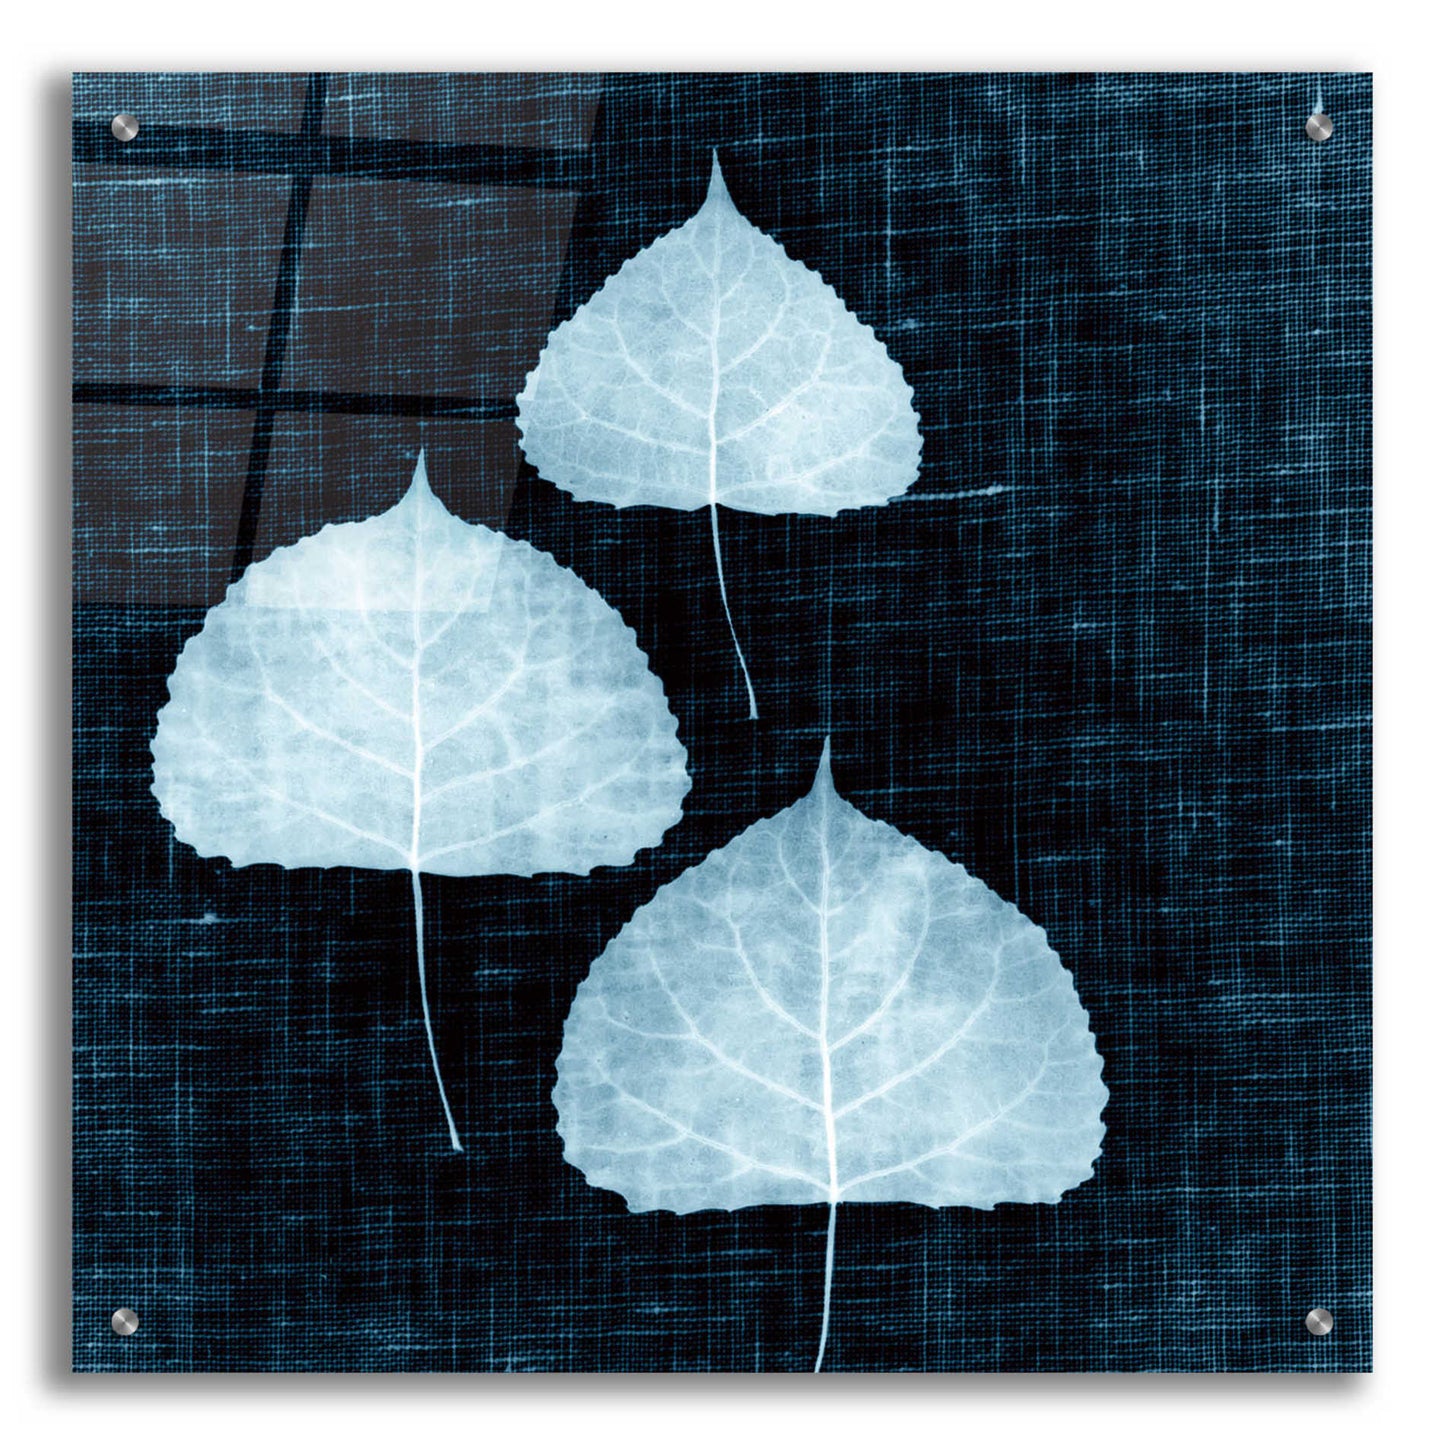 Epic Art 'Leaves on Linen III' by Debra Van Swearingen, Acrylic Glass Wall Art,24x24